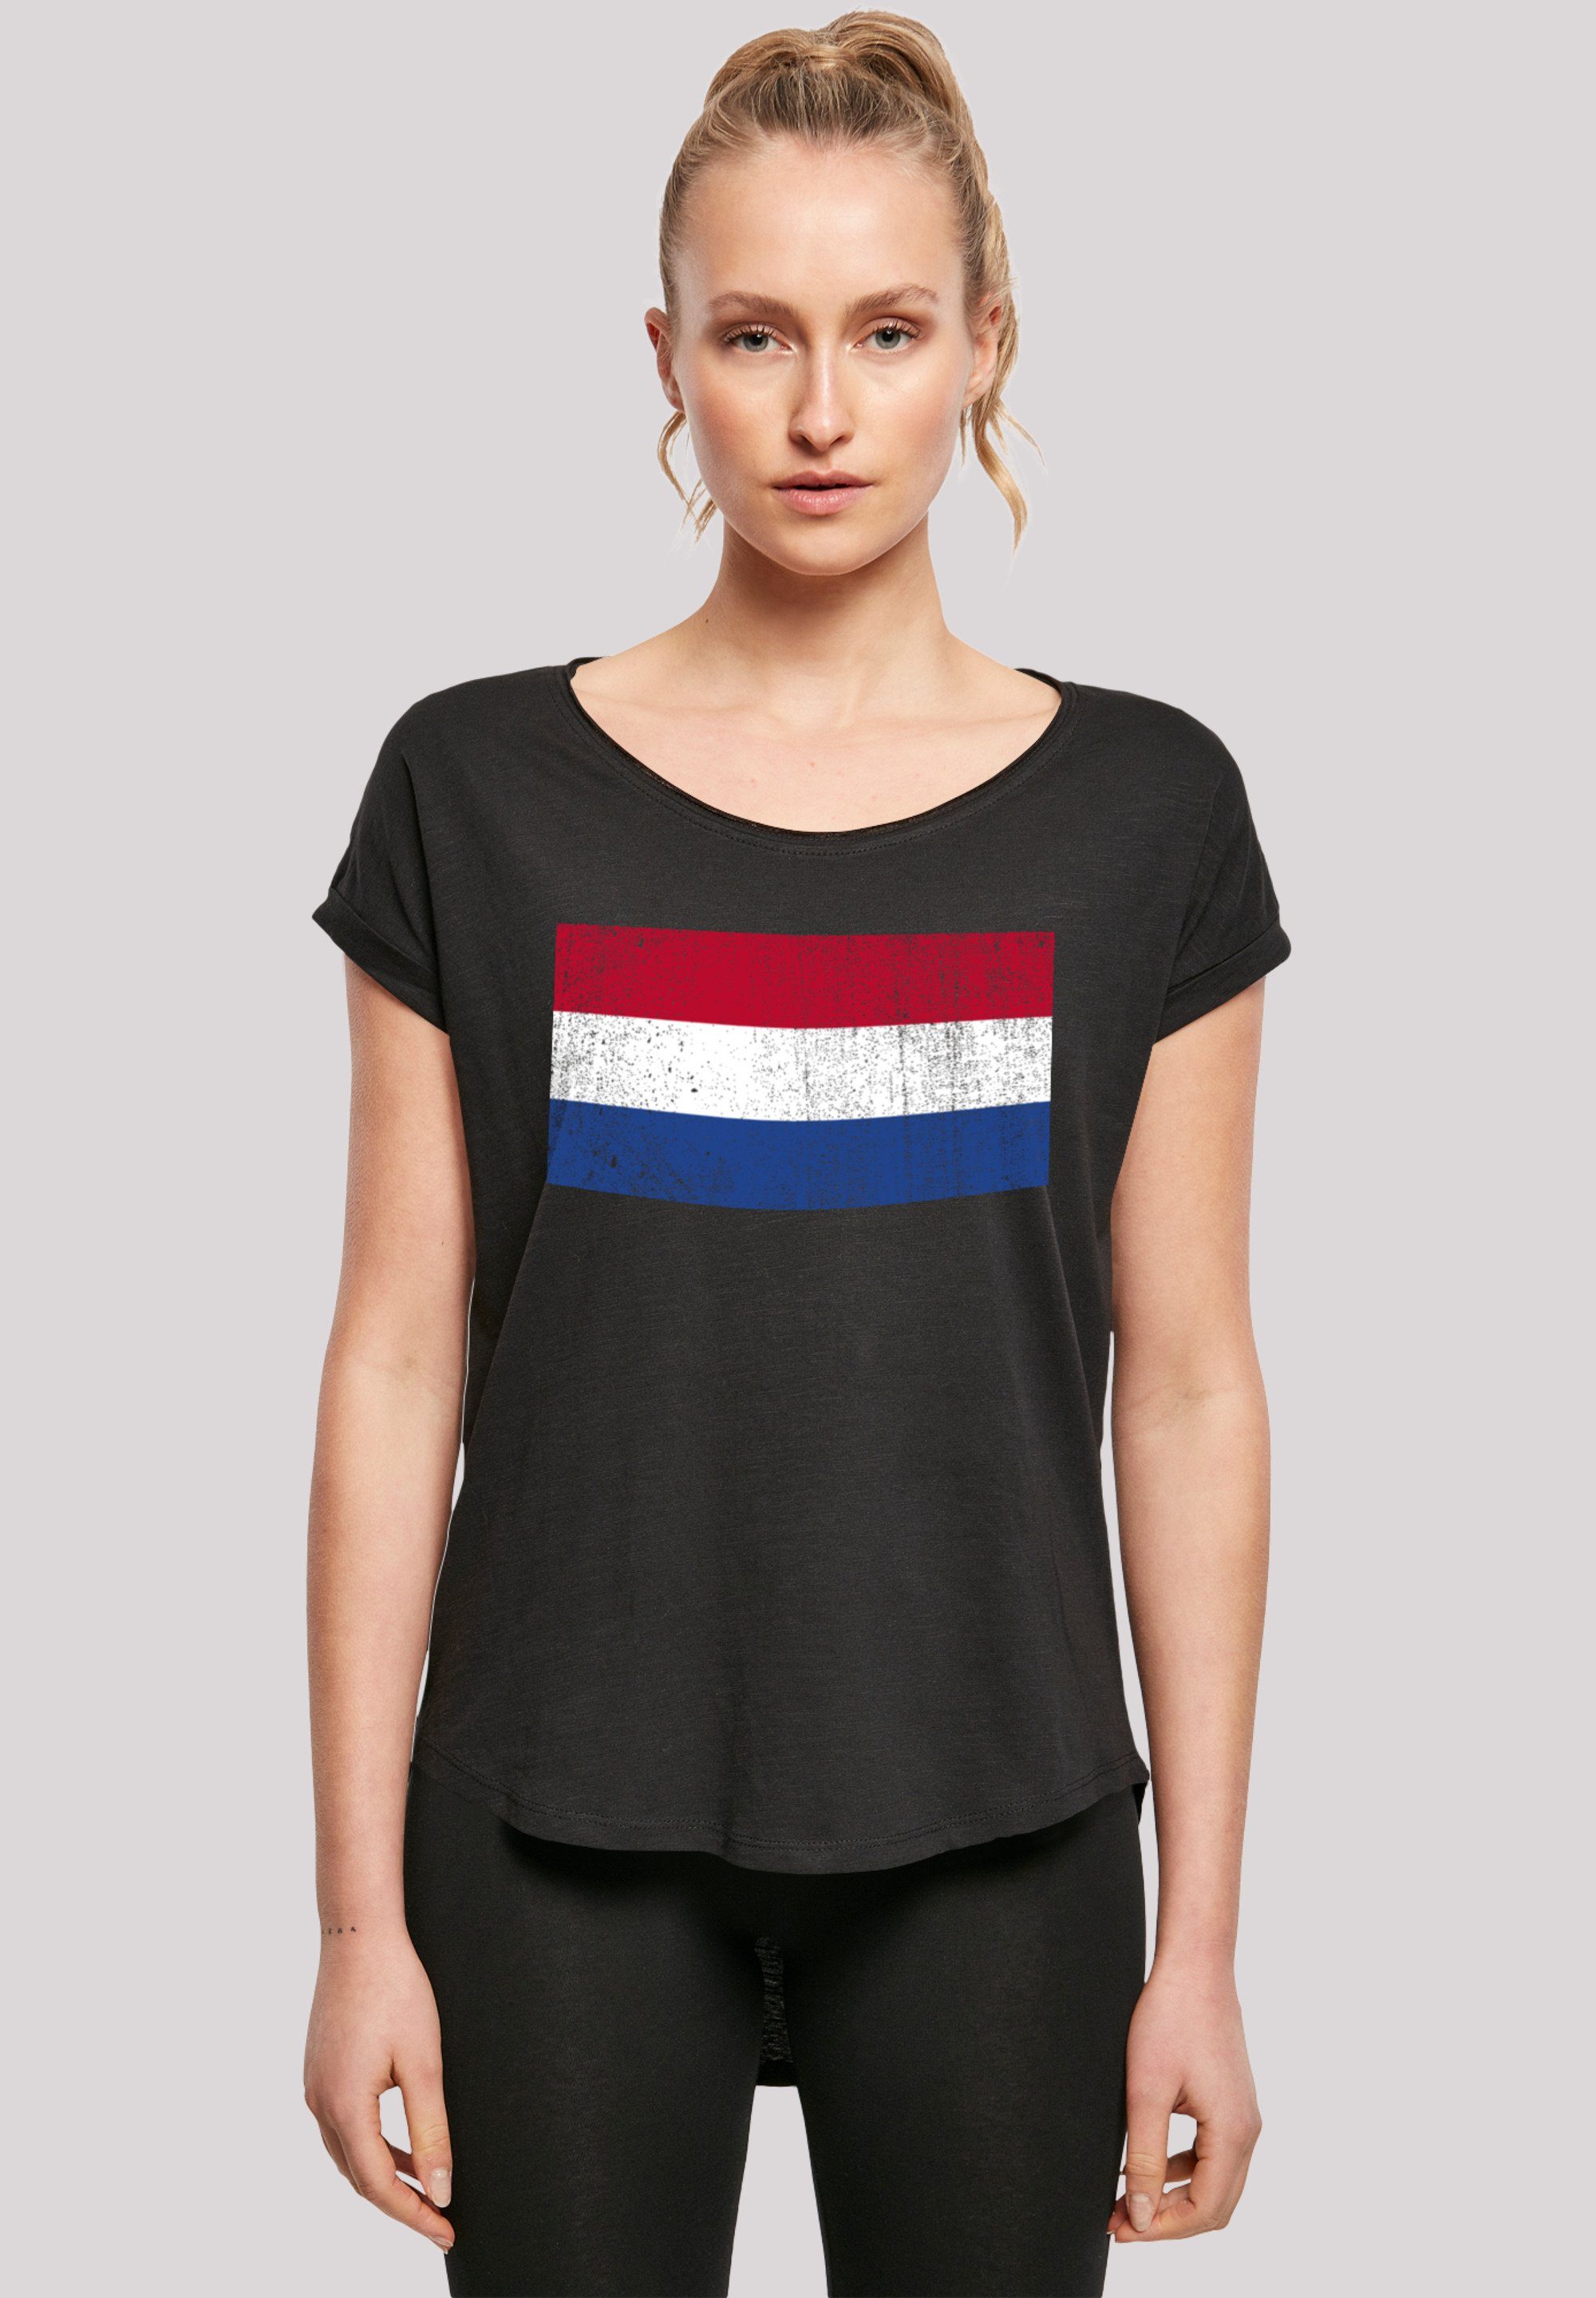 Tragekomfort Baumwollstoff hohem NIederlande Netherlands mit distressed Print, T-Shirt F4NT4STIC Sehr Flagge Holland weicher